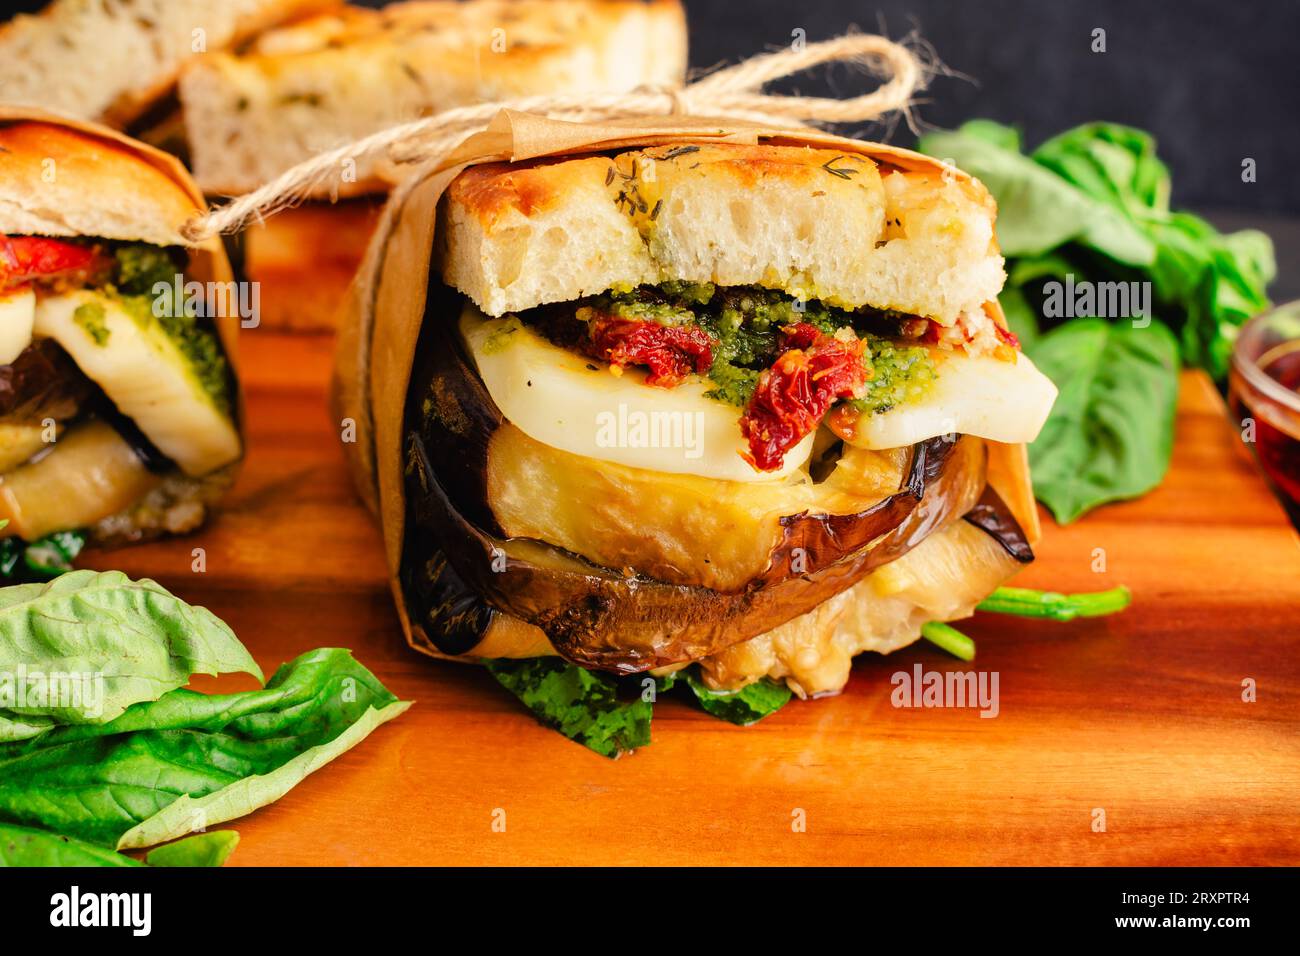 Sandwichs végétariens italiens grillés enveloppés dans du papier brun : sandwichs rustiques avec des ingrédients méditerranéens sur du pain focaccia grillé Banque D'Images